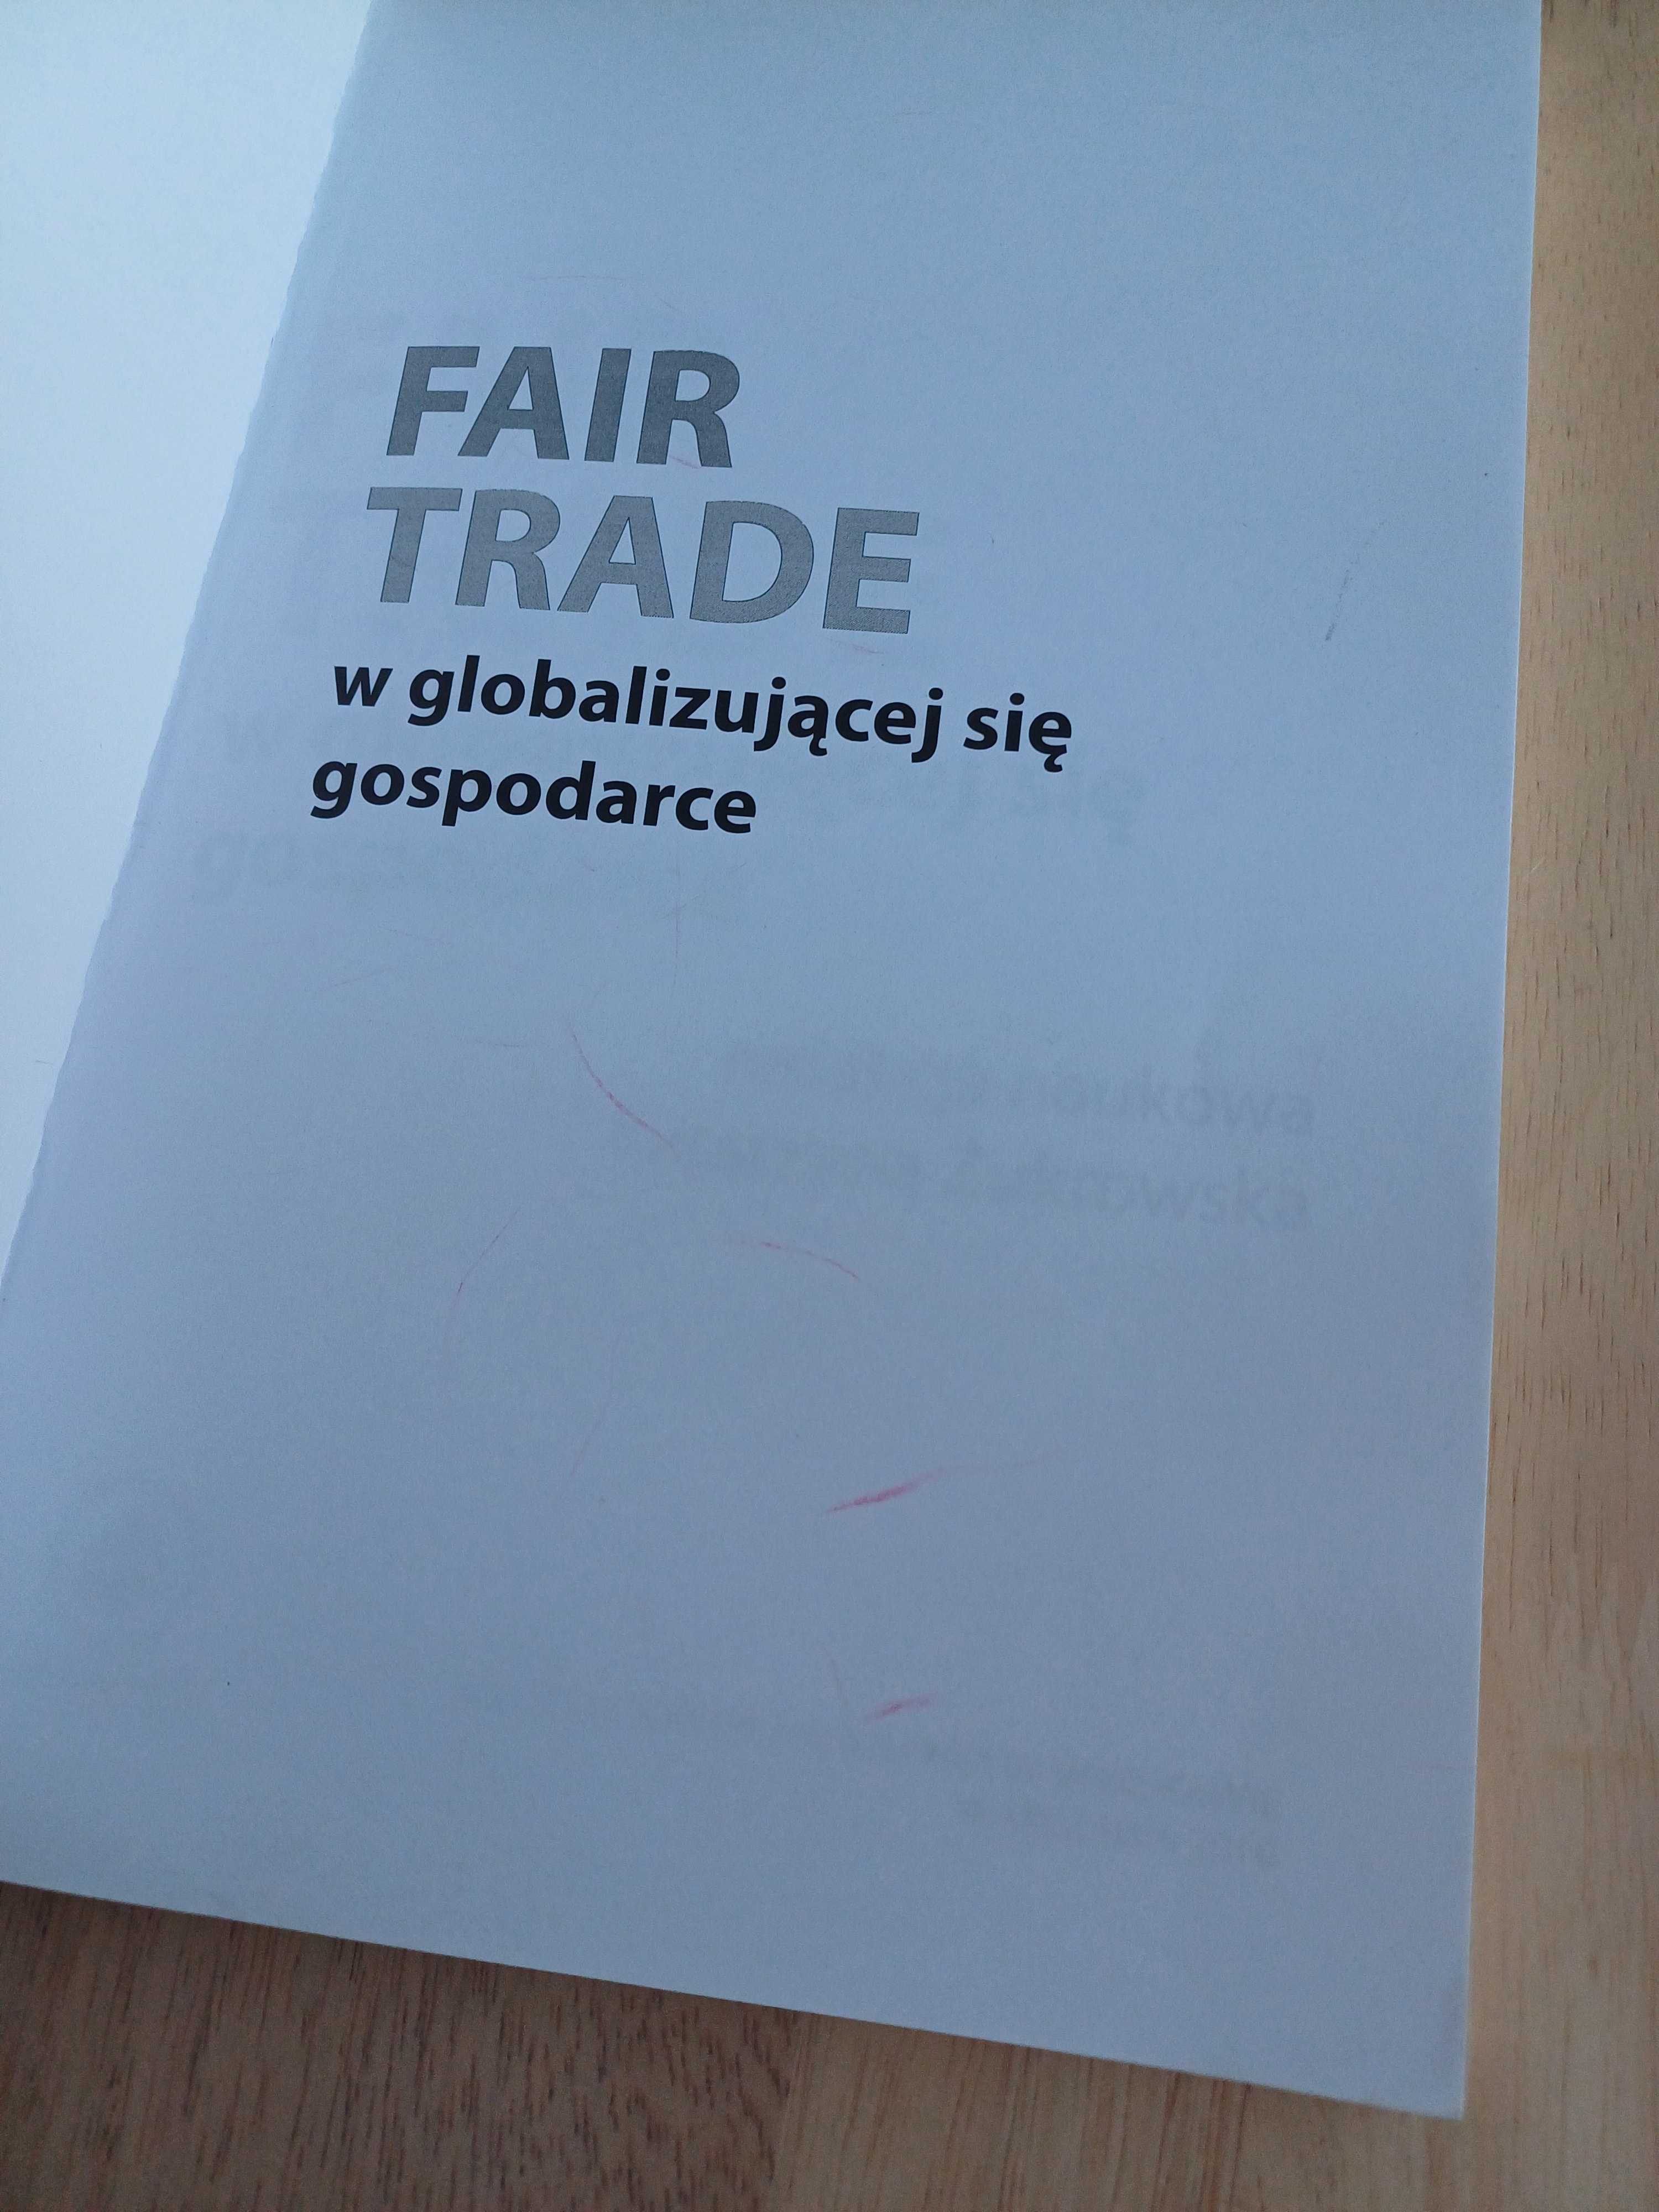 Fair Trade w globalizującej się gospodarce - Katarzyna Żukrowska